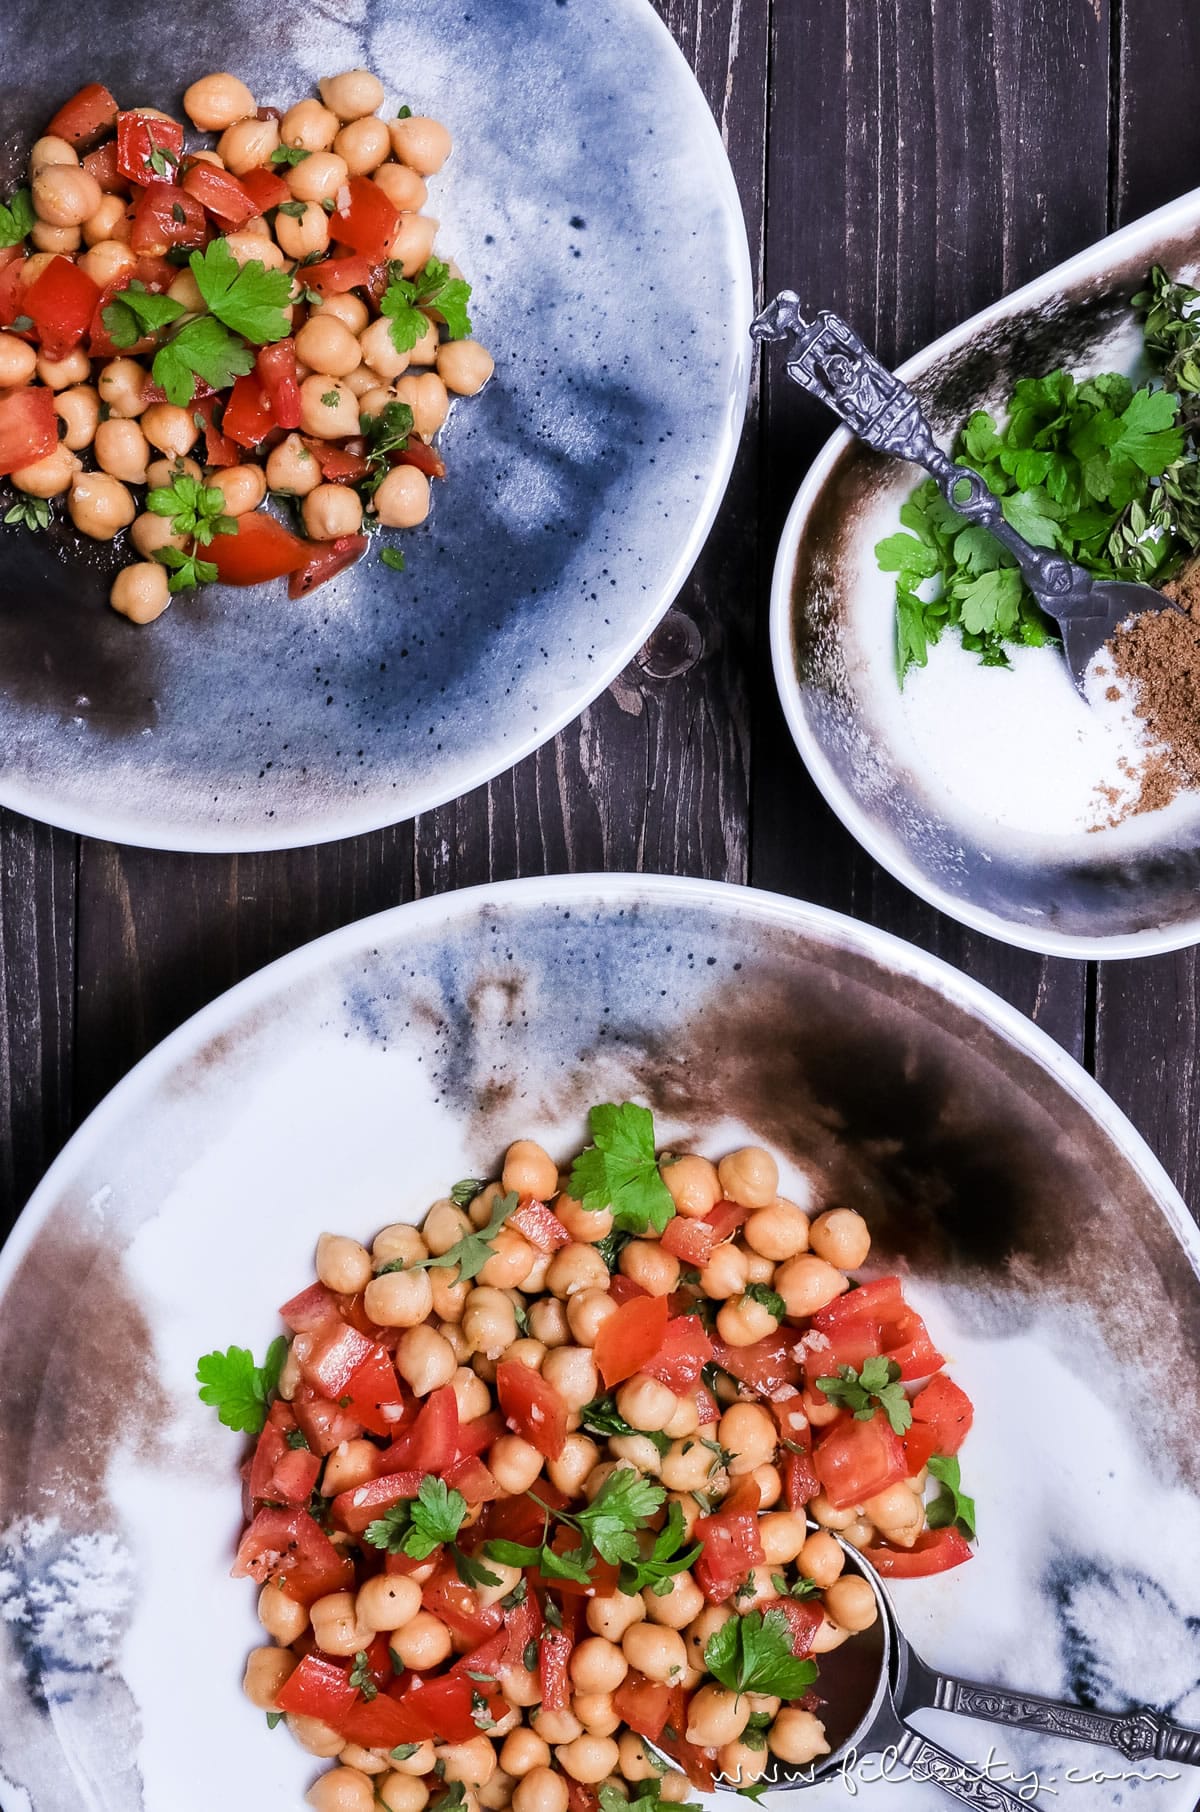 Mezze-Rezept: Orientalischer Kichererbsen-Salat | schnell, gesund, lecker und vegan | Filizity.com | Food-Blog aus dem Rheinland #mezze #salat #vegan